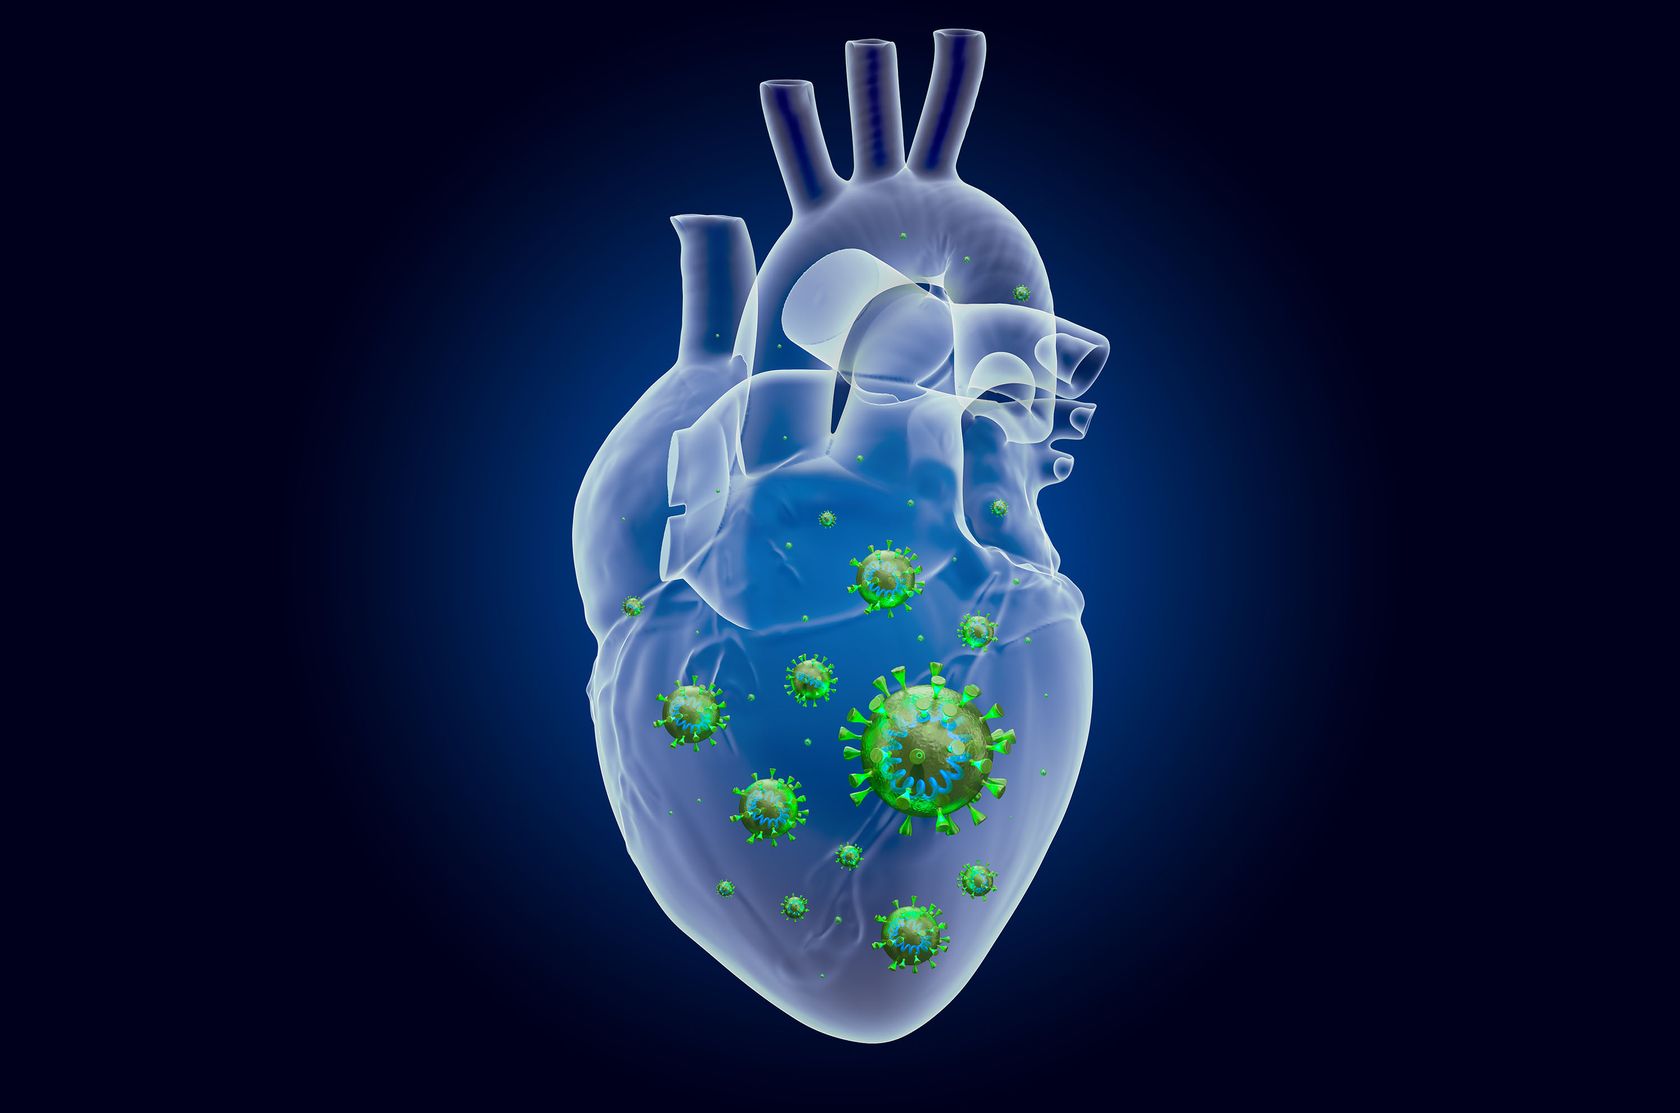 3D-Illustration von einem Herz mit Covid-Viren innen